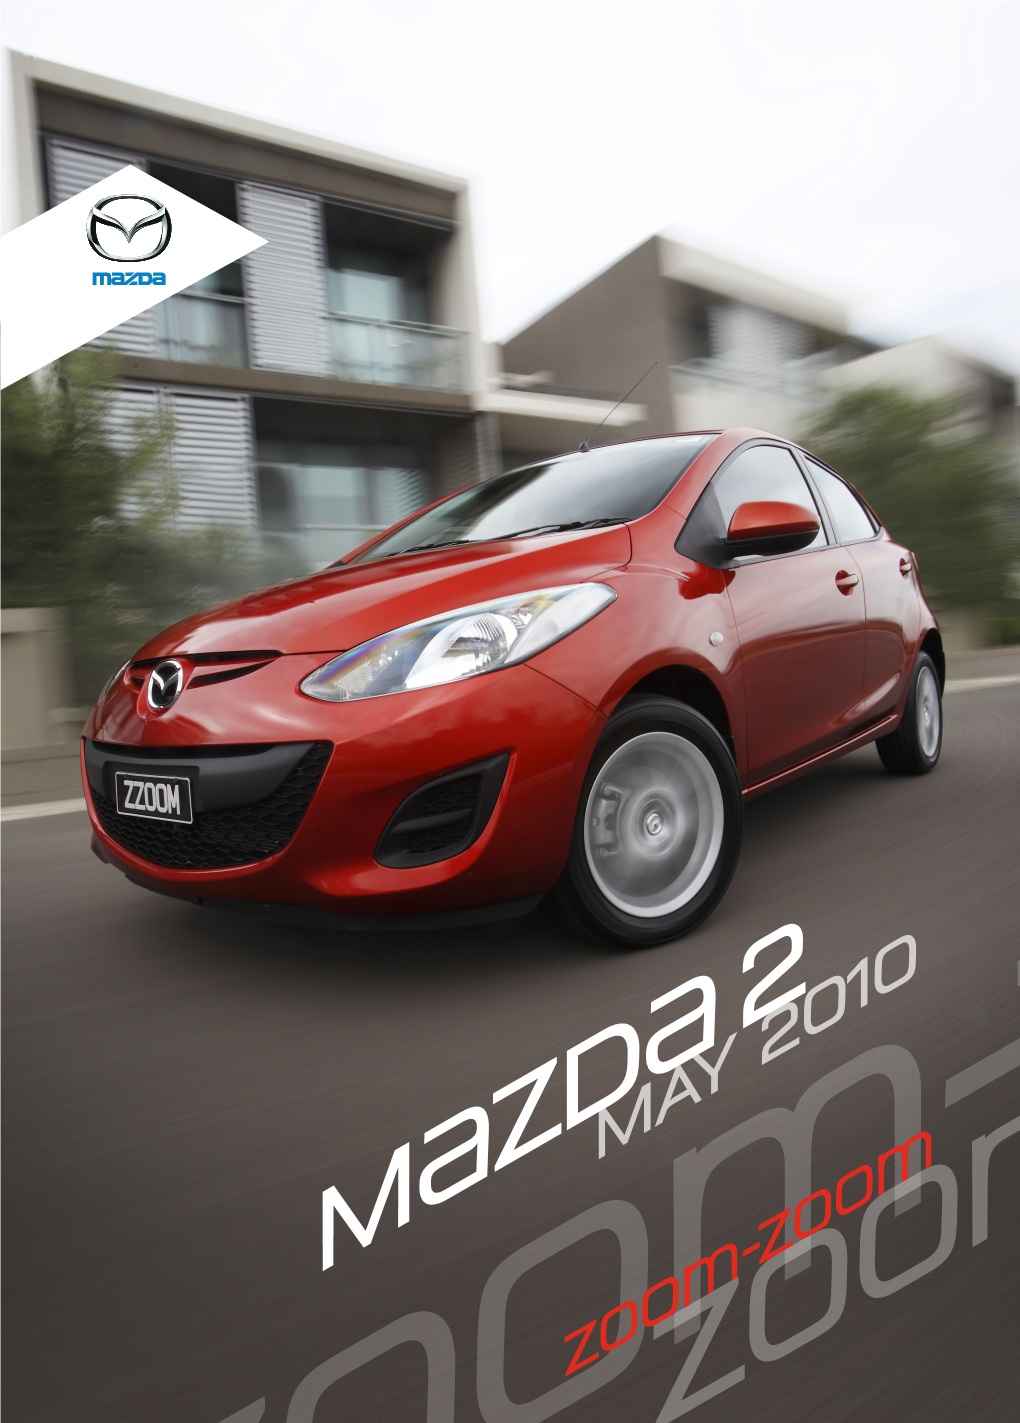 Press Kit: Mazda DE.II Mazda2 (May 2010)